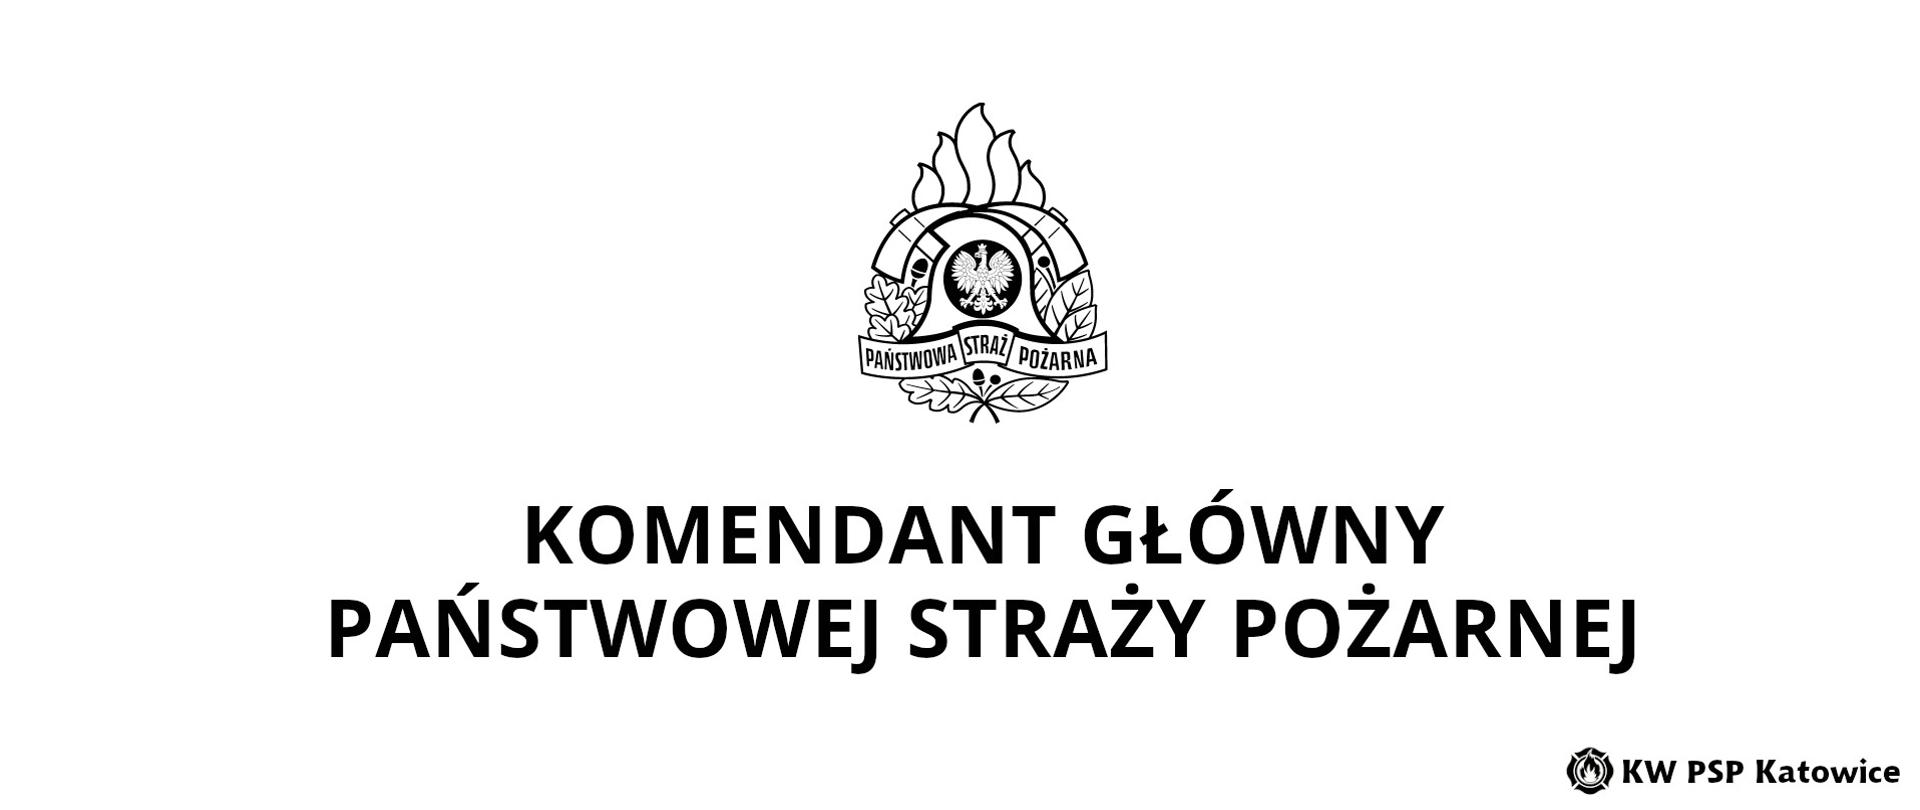 Ilustracja przedstawia czarno - białe logo PSP oraz duży czarny napis Komendant Główny Państwowej Straży Pożarnej. W dolnym prawym rogu znajduje się napis KW PSP Katowice.